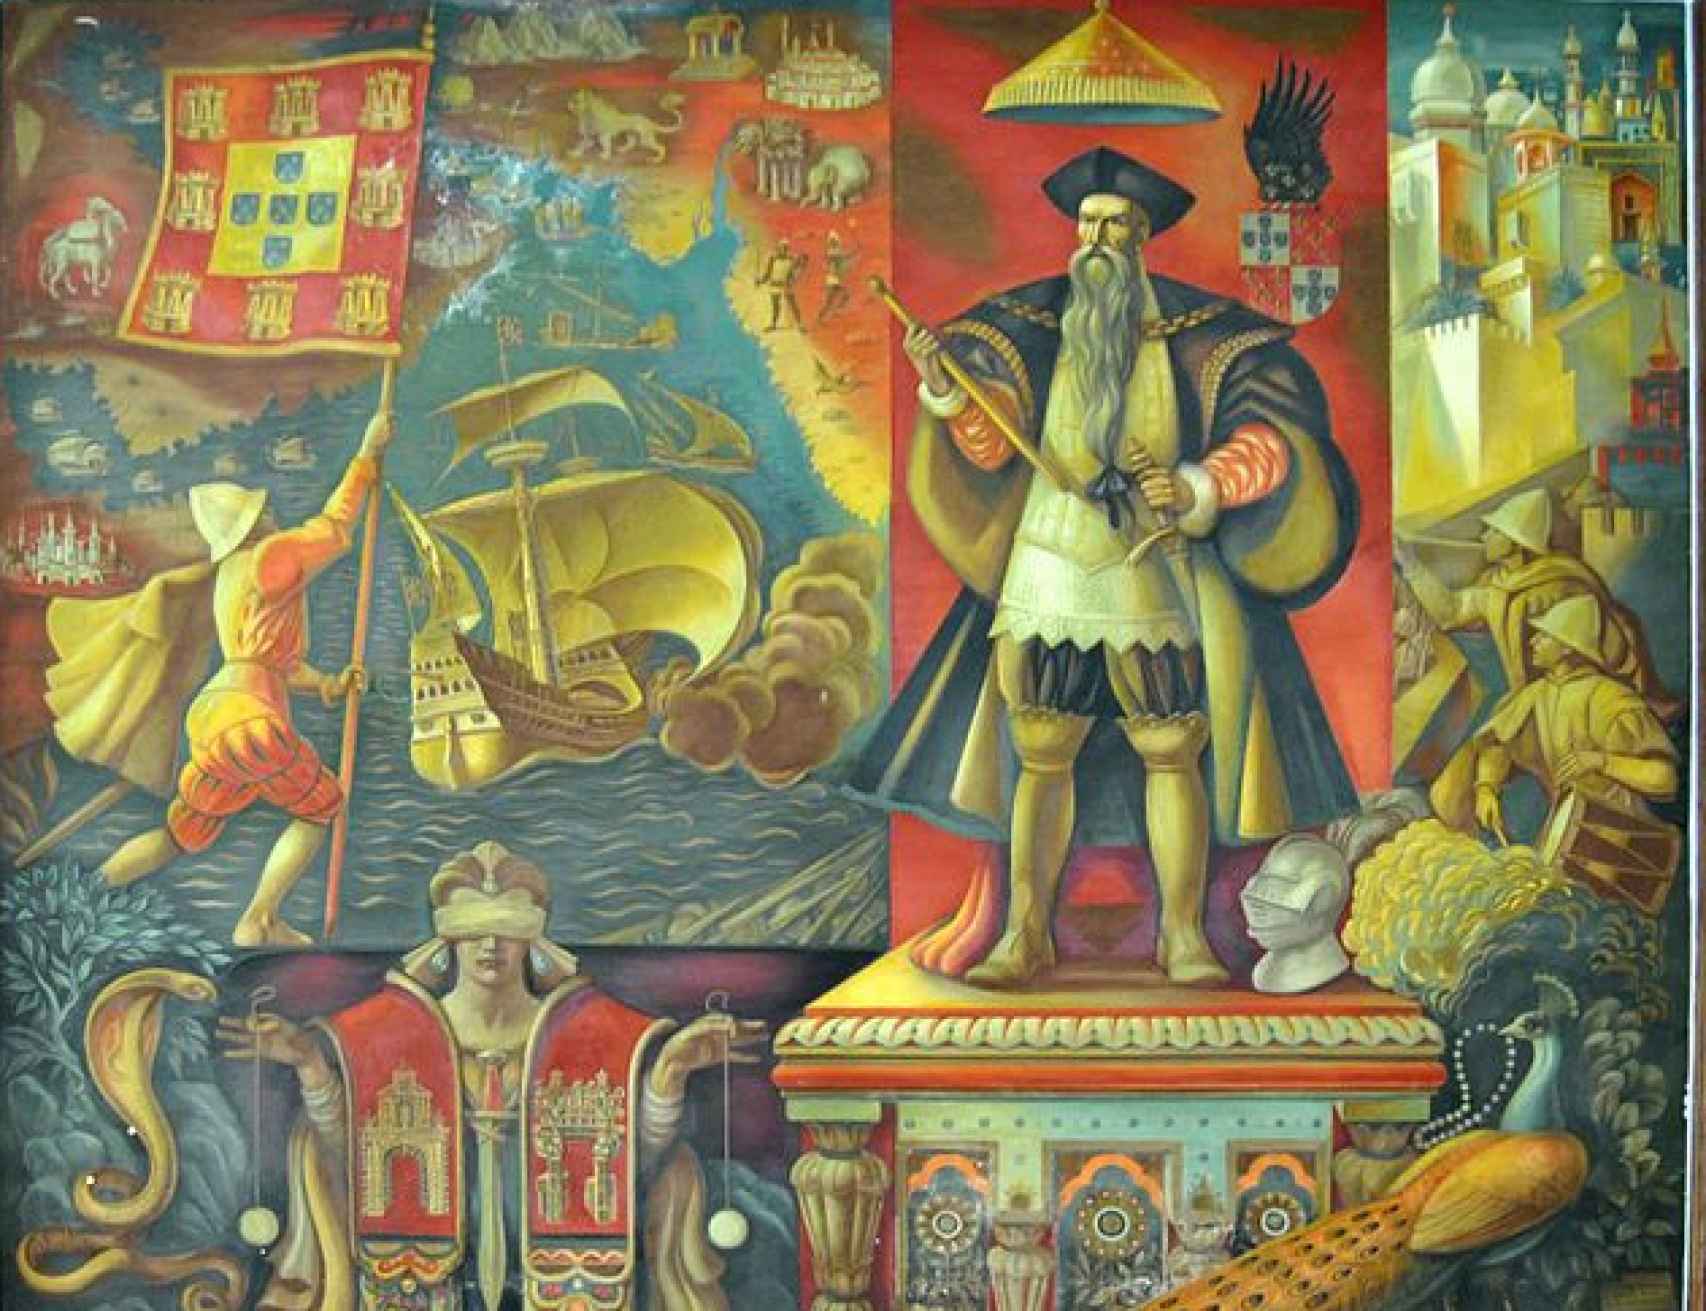 La expedición buscó hacerse con el control de las Molucas, bajo influencia portuguesa desde 1511